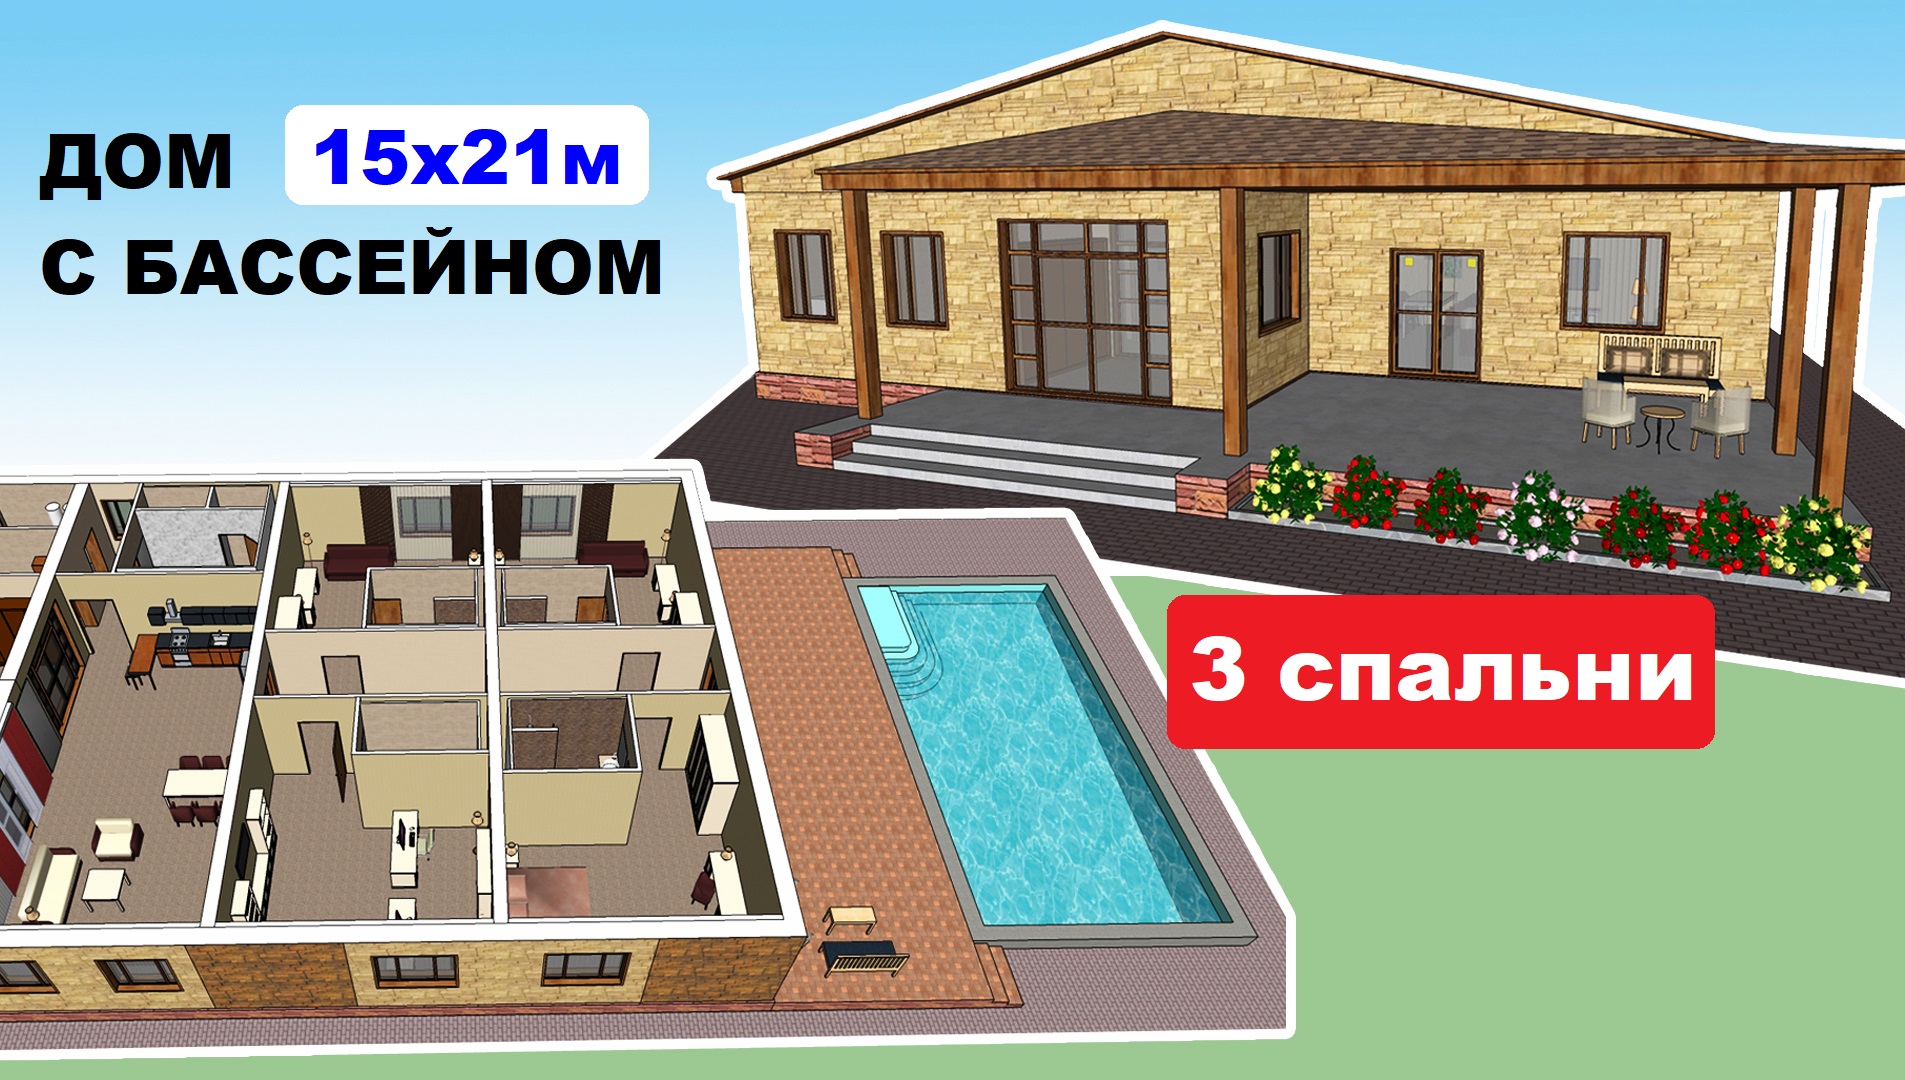 Проект дома 15х21 м. Бассейн, 3 спальни. Проекты домов. Планировка дома. План дома. Одноэтажные дома